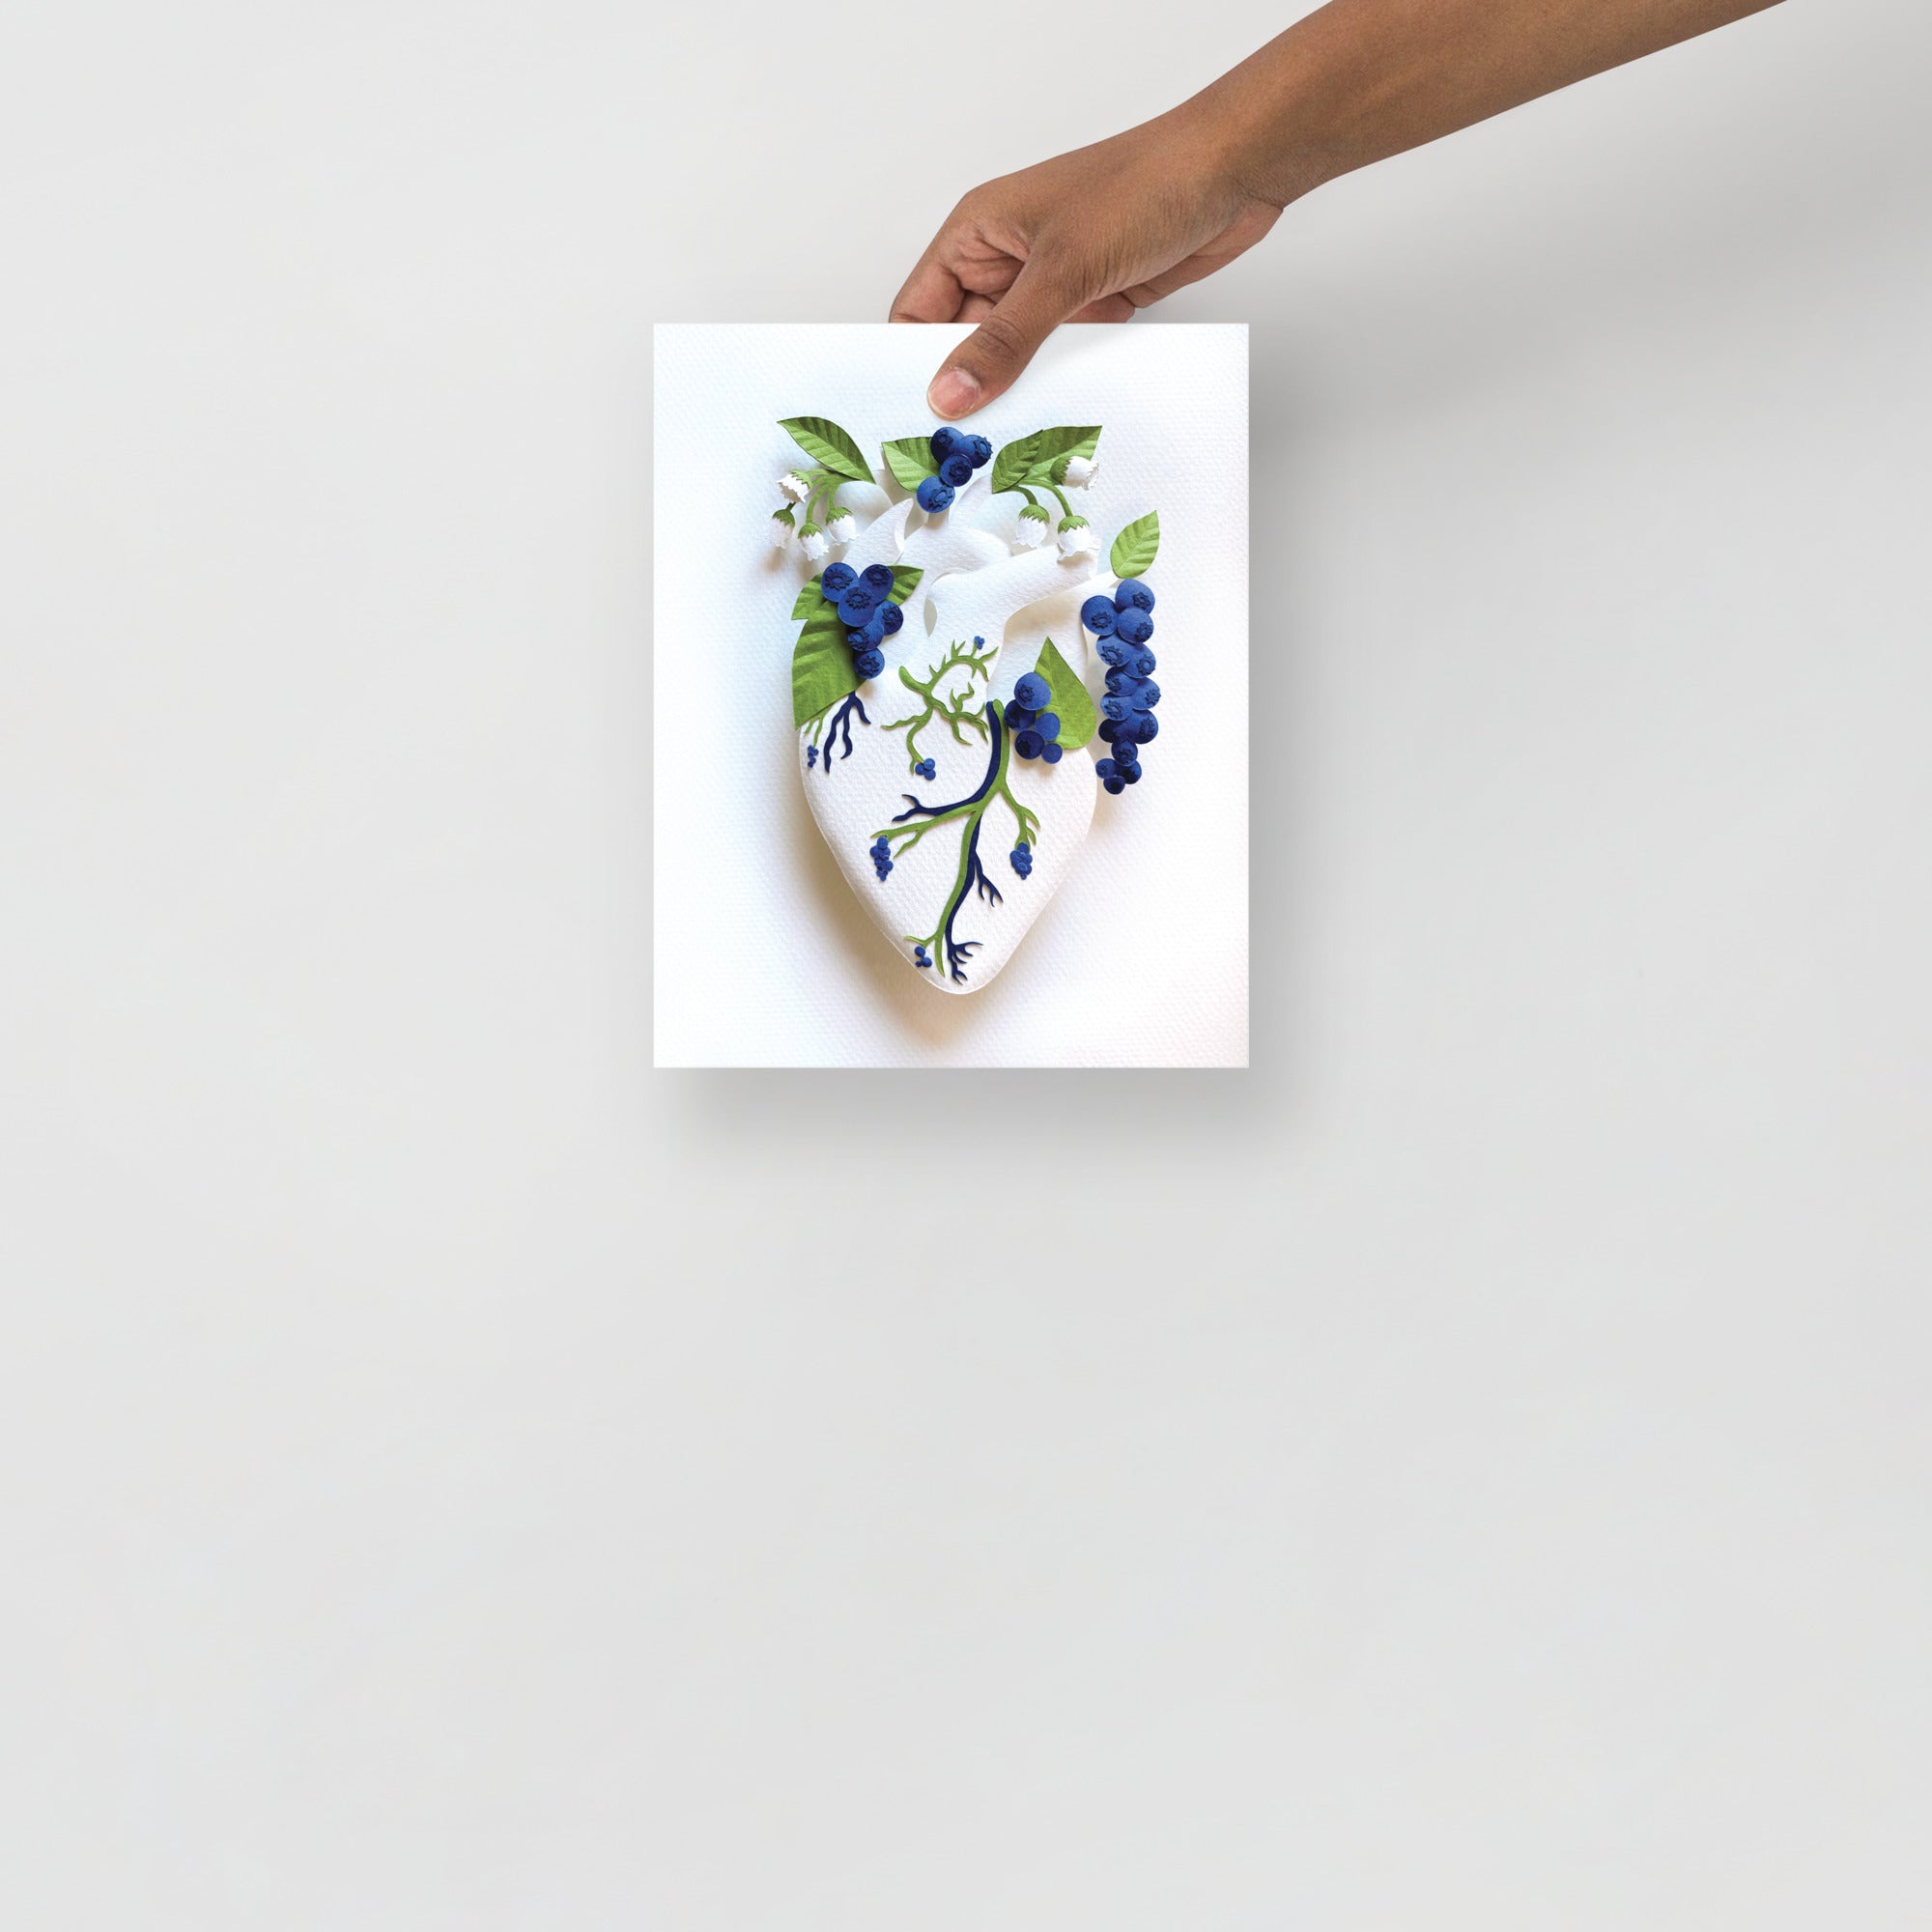 Healing Heart: Blueberries 8" x 10" print